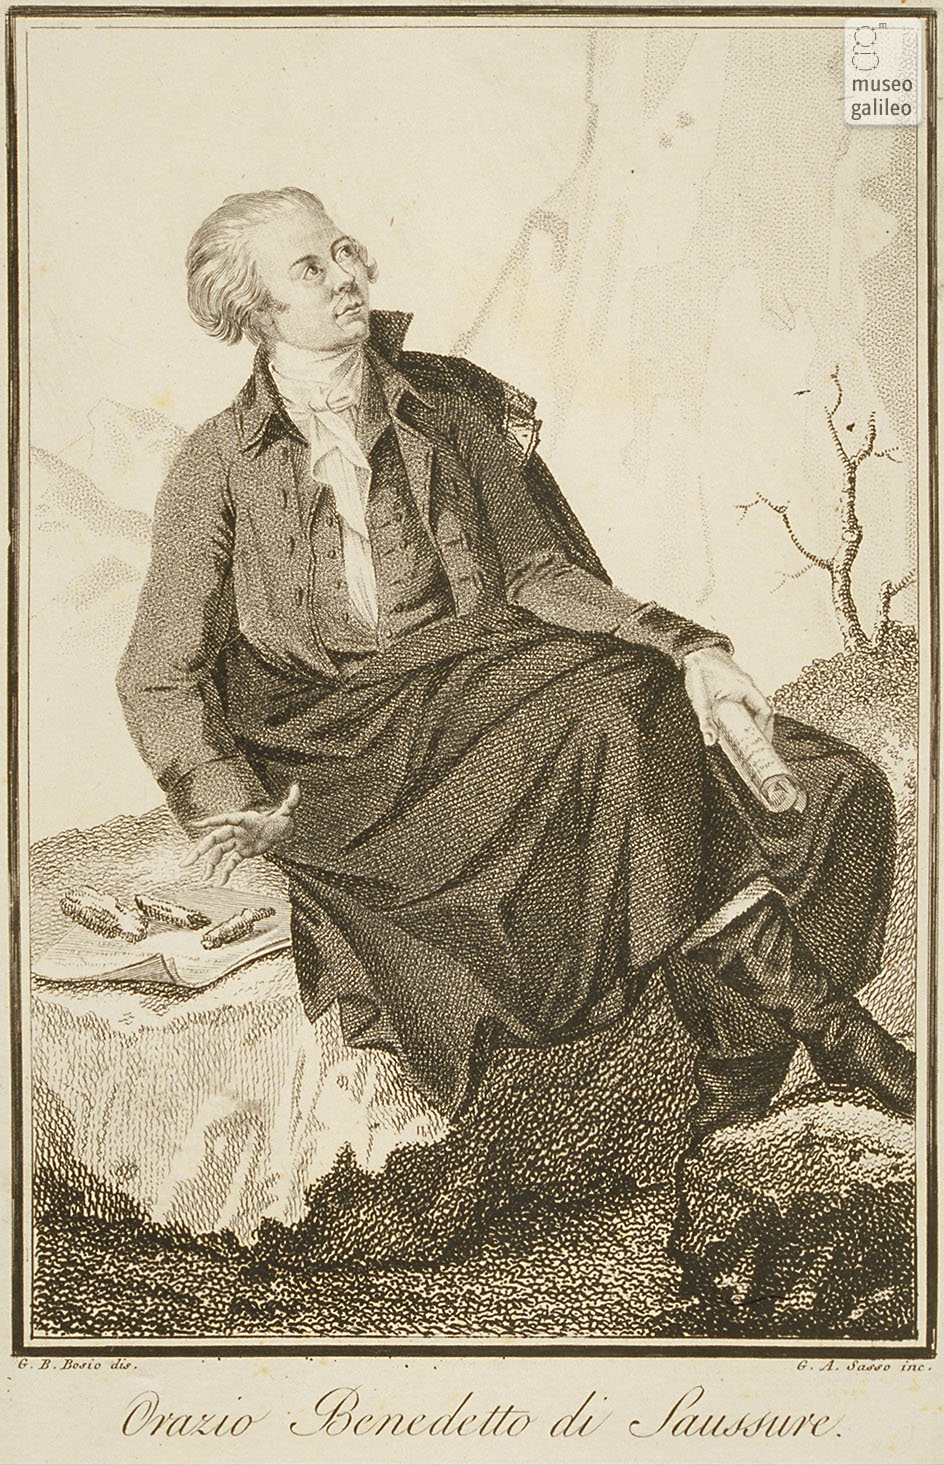 Horace-Bénédict de Saussure